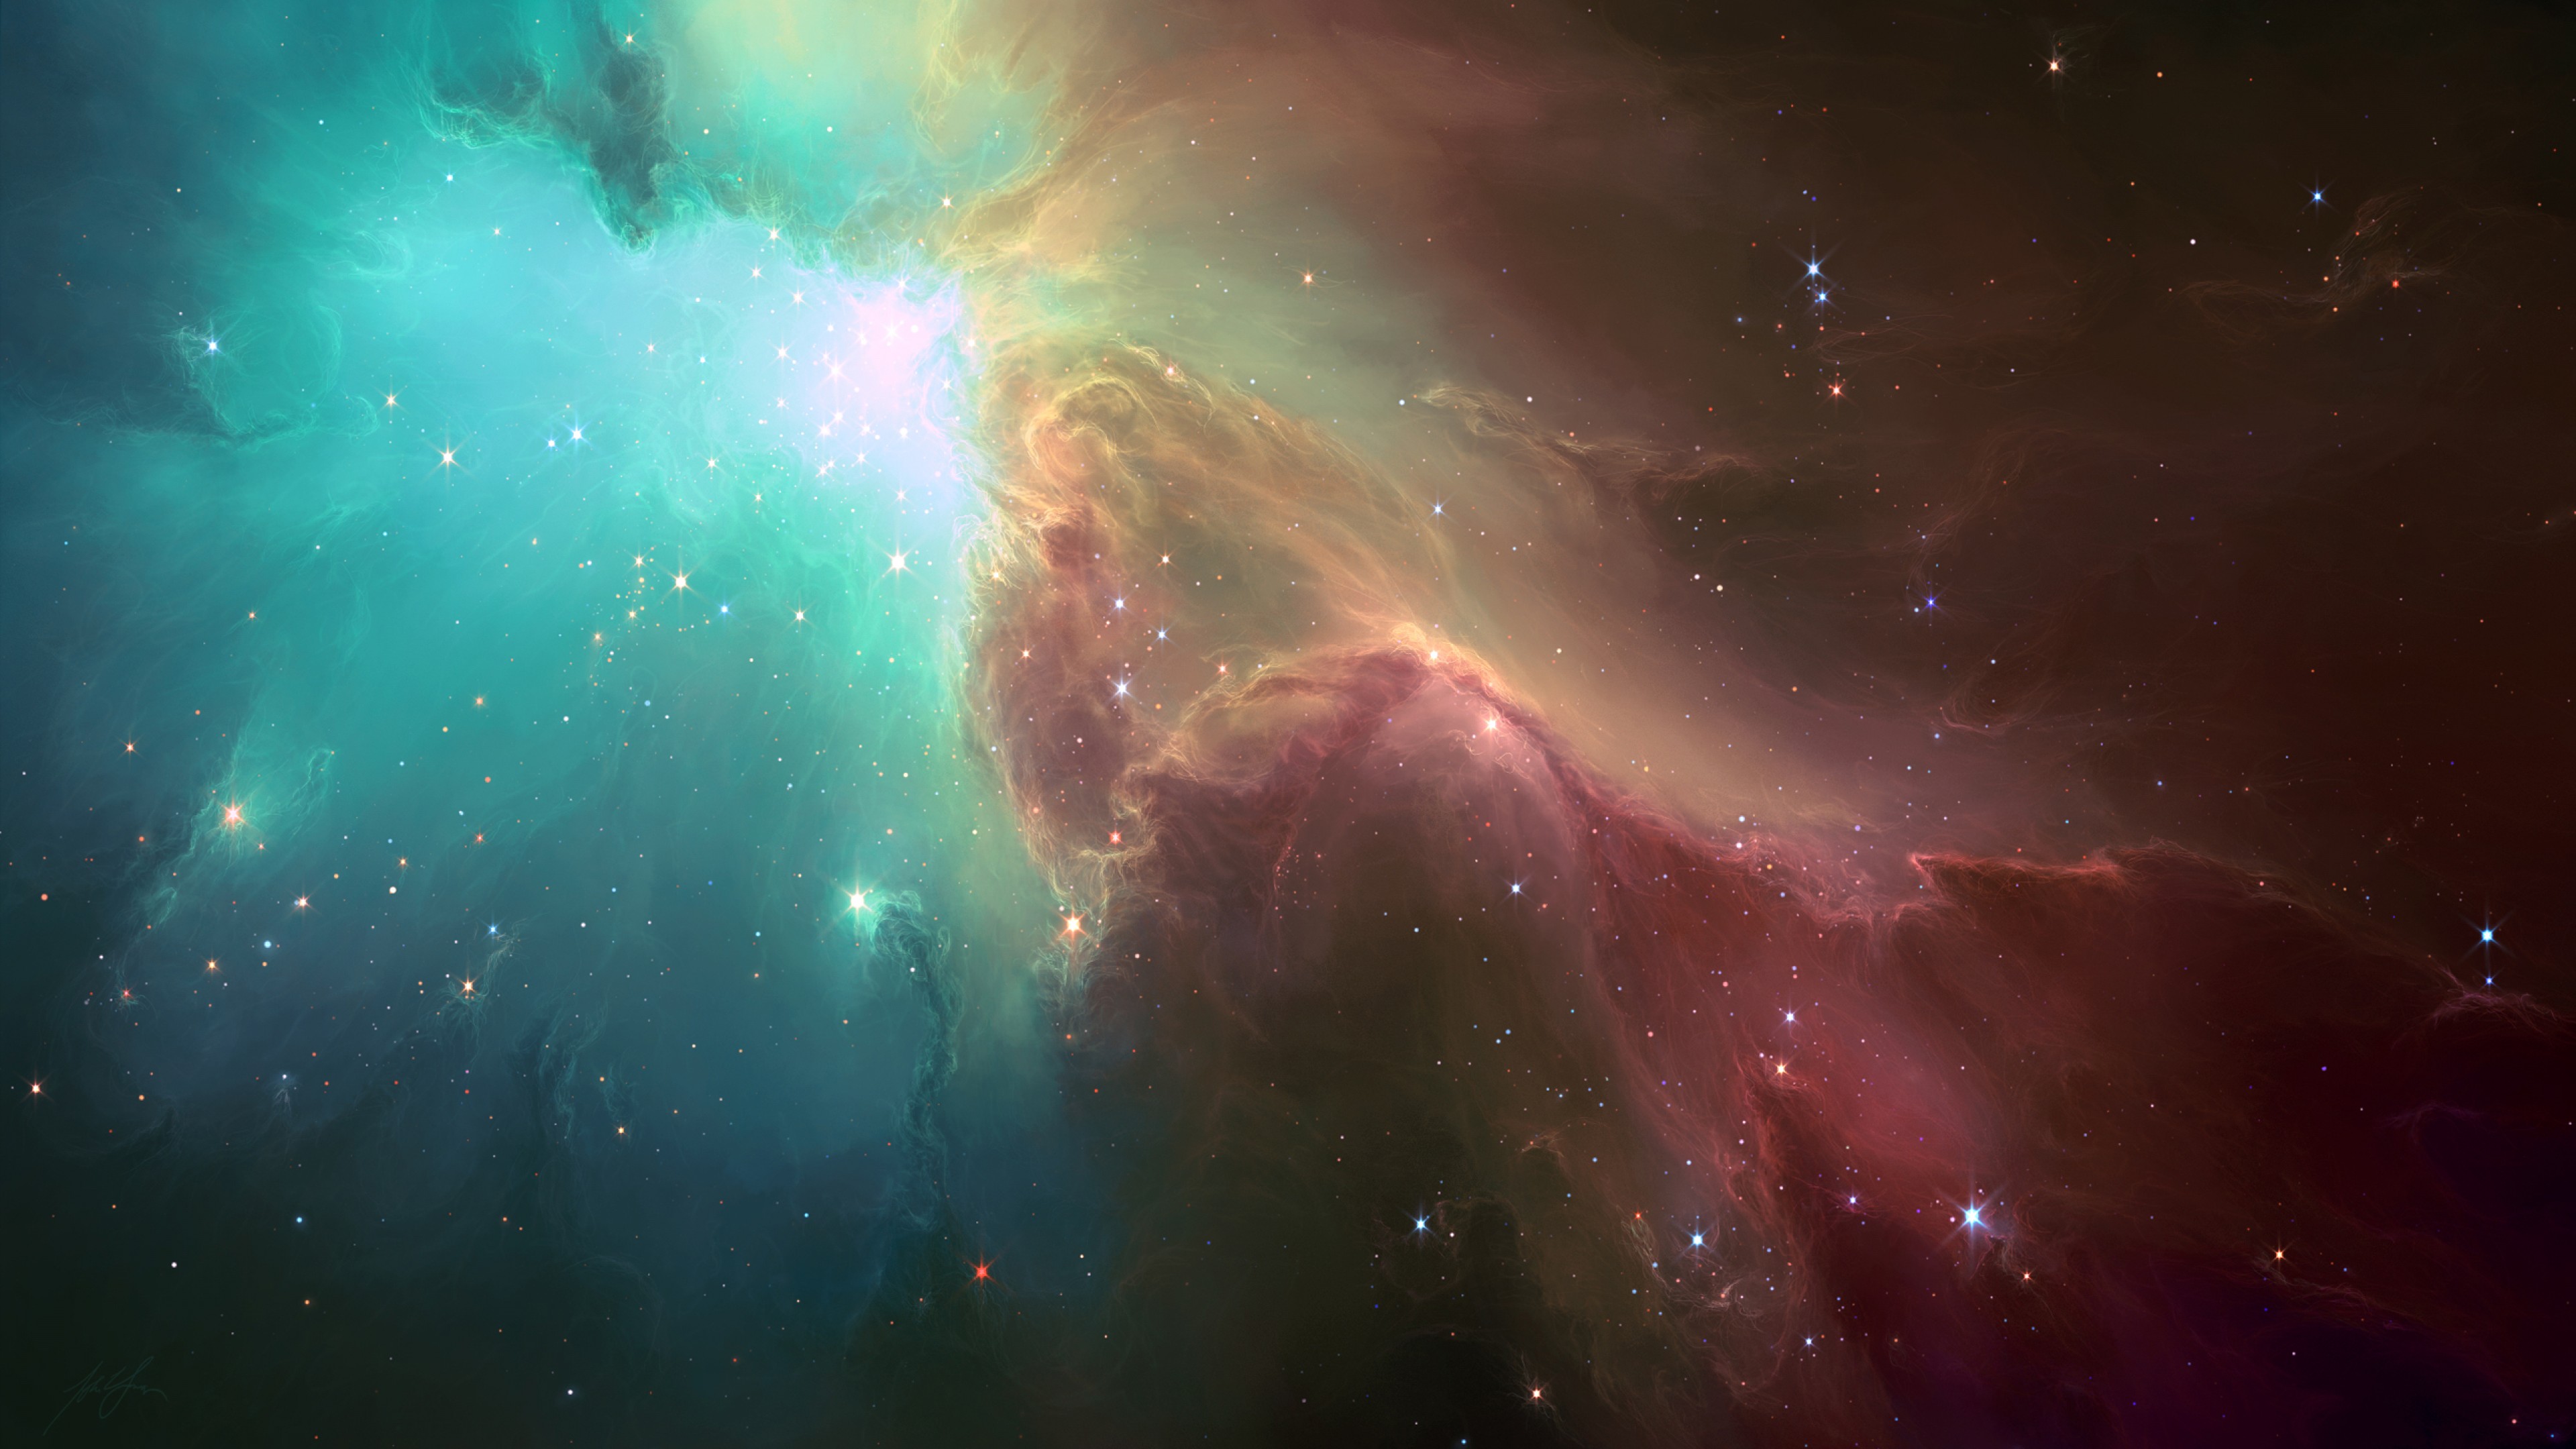 Картинки 2560 на 1440. Космос звезды Галактика туманность. Туманность столпы творения. Космический фон.